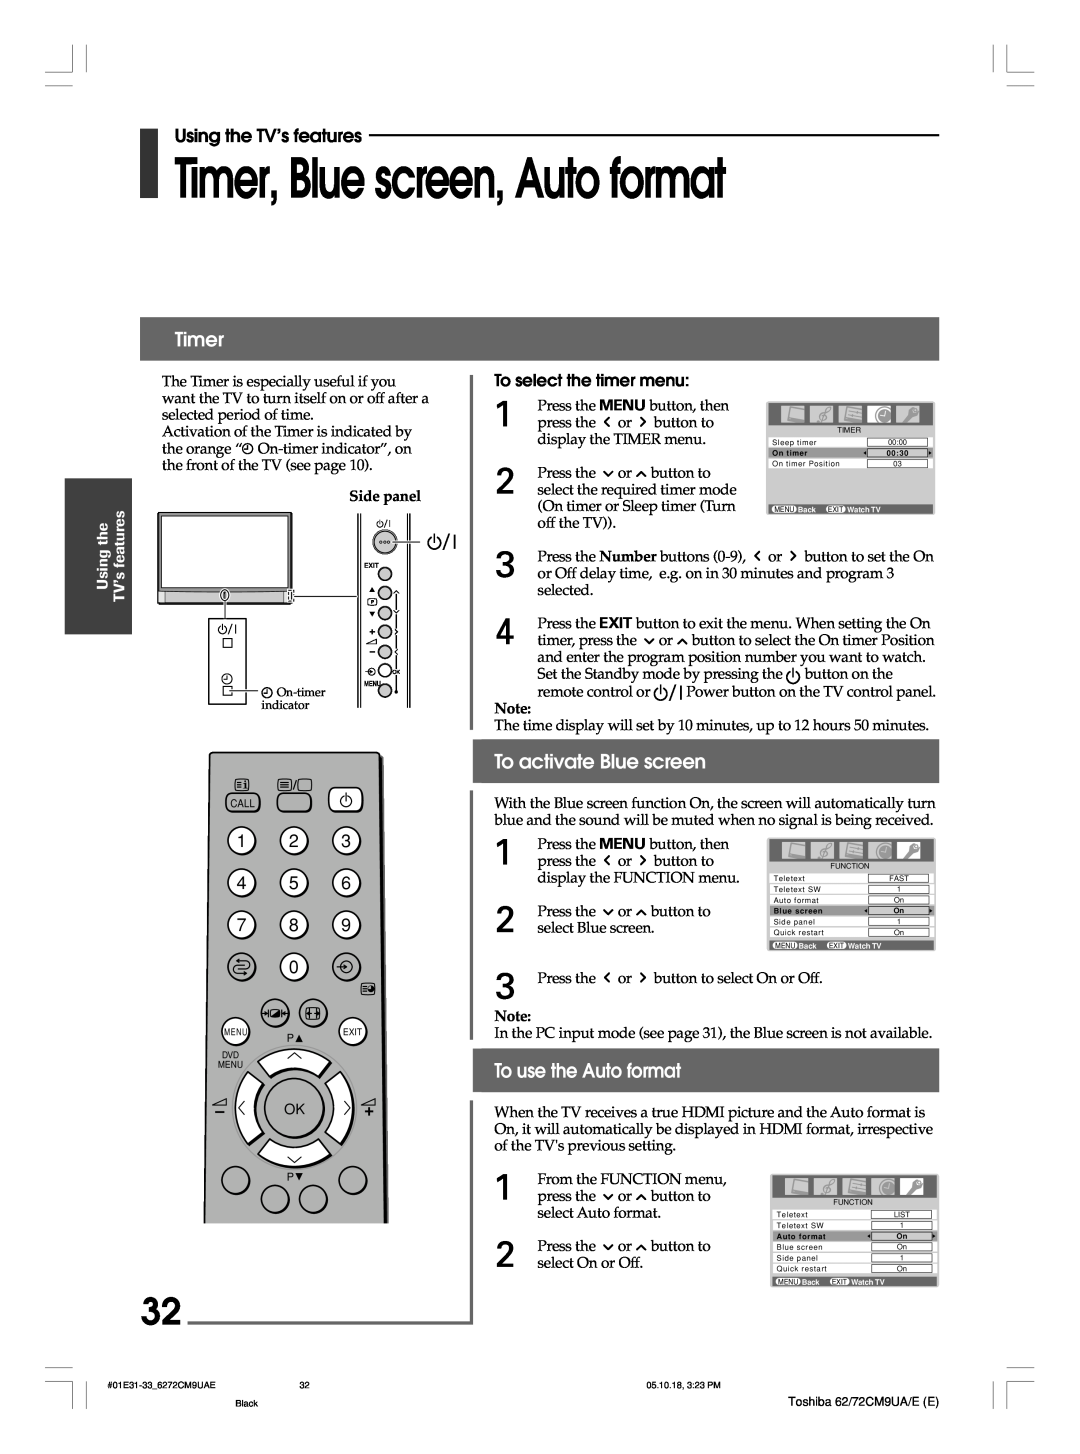 Toshiba 62CM9UA Timer, Blue screen, Auto format, To activate Blue screen, To use the Auto format, To select the timer menu 